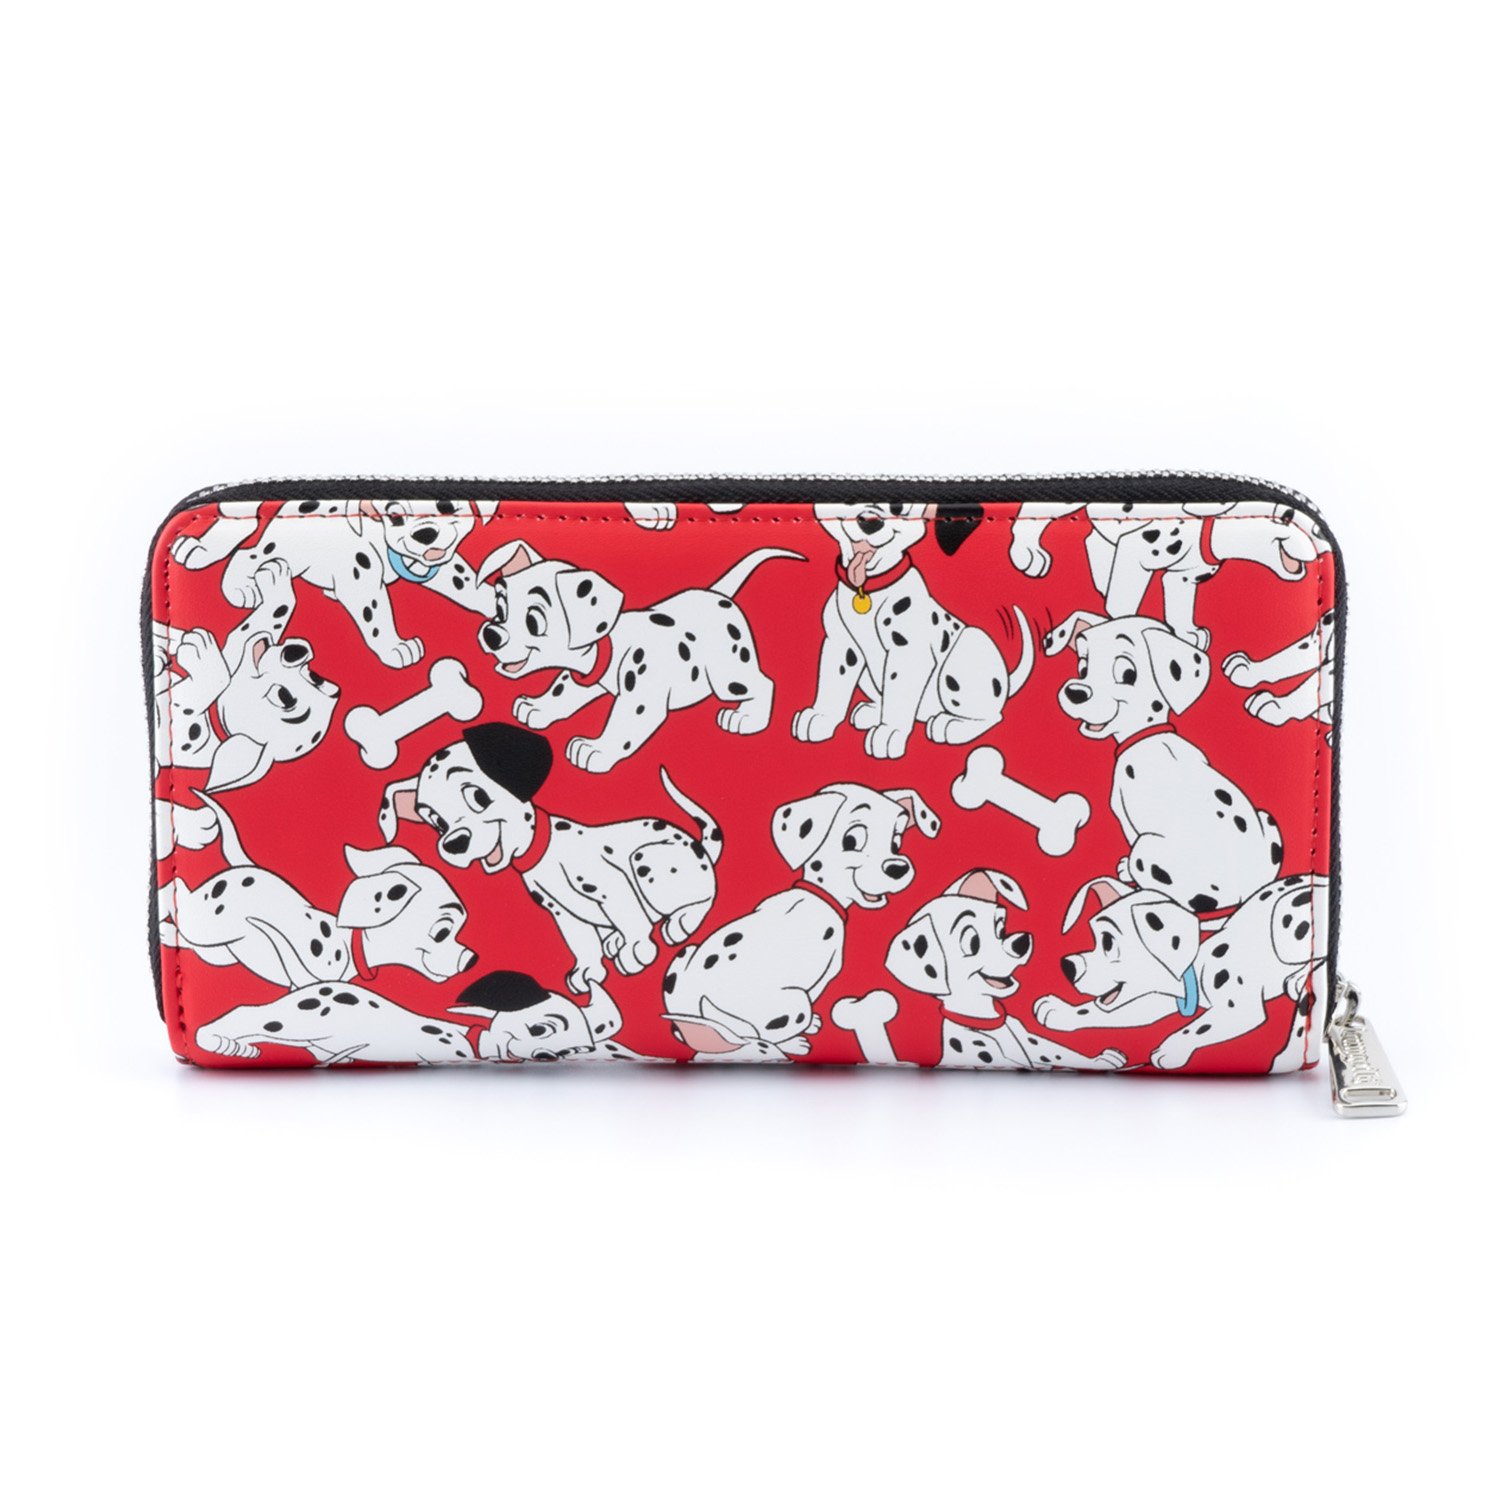 101 dalmatians wallet